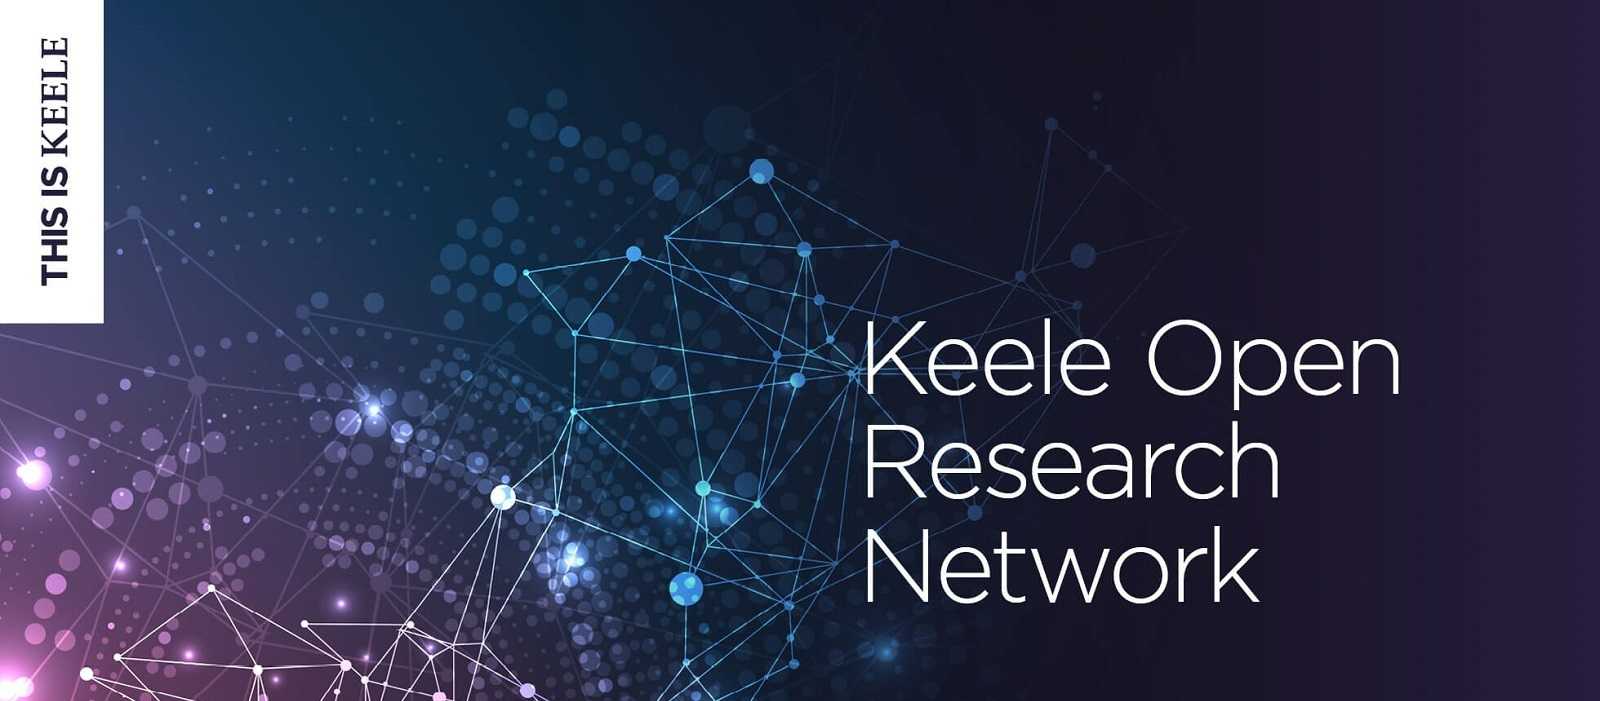 Keele Open Research Network branding